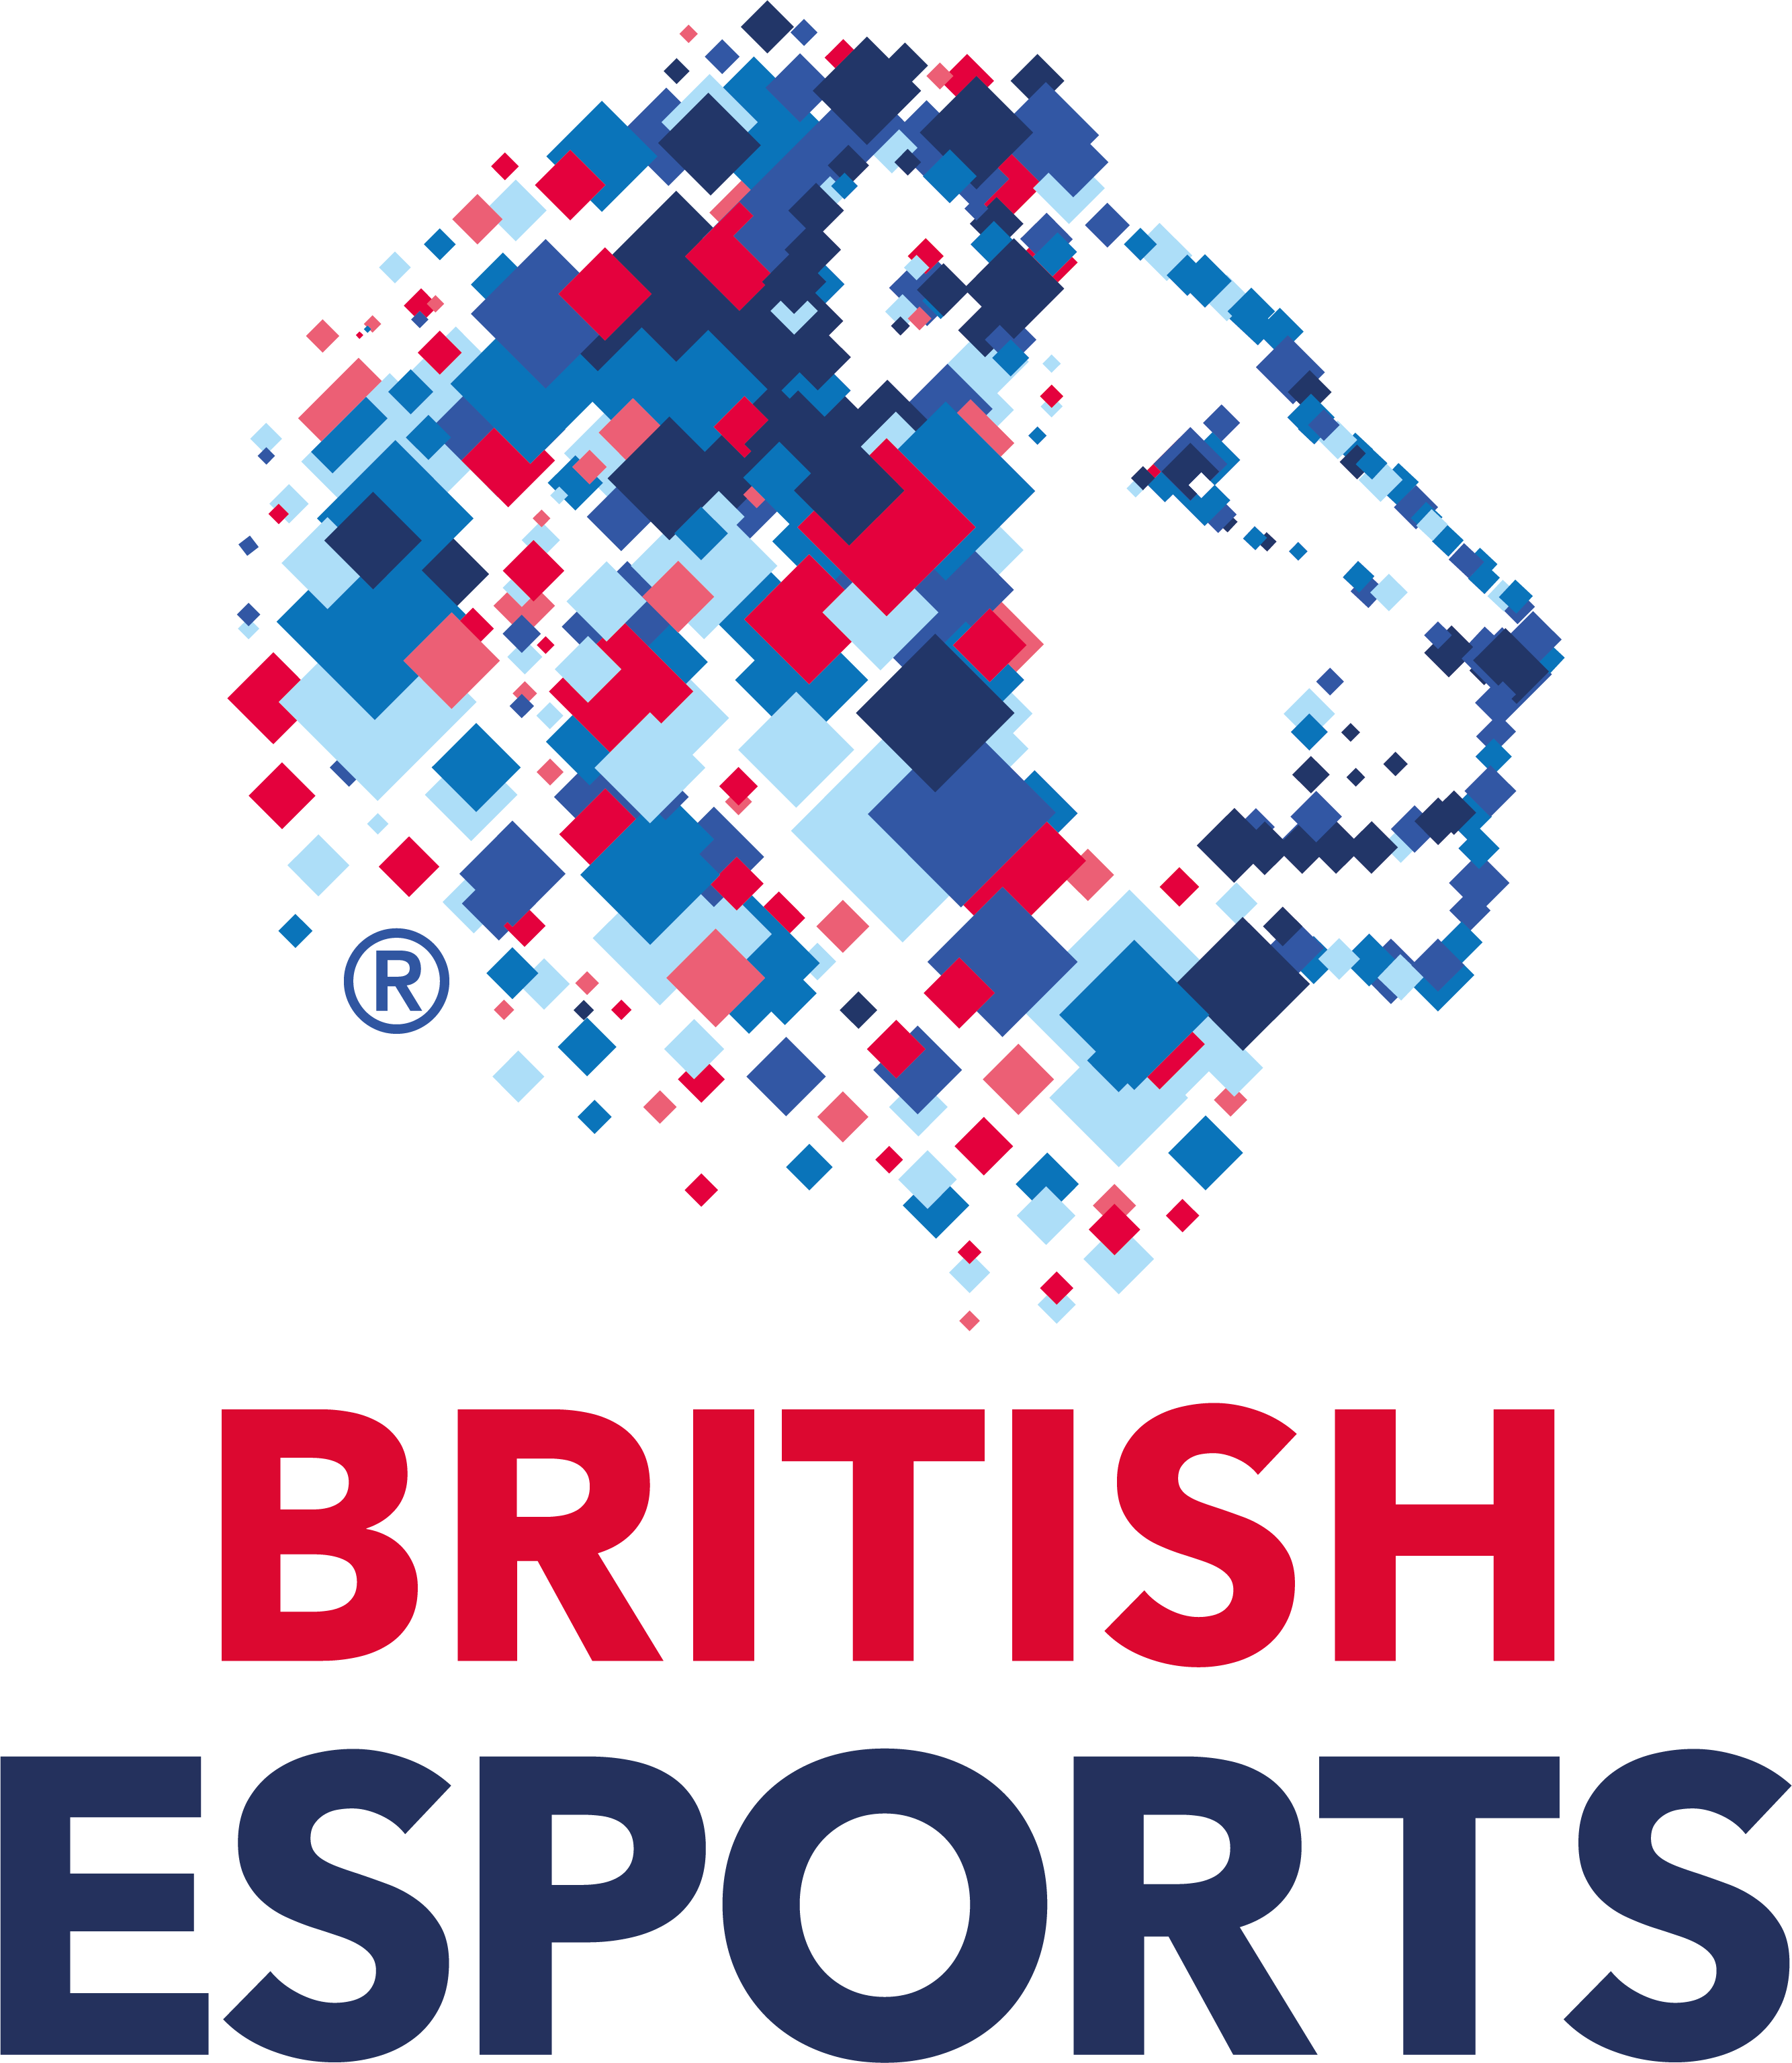 British Esports logo